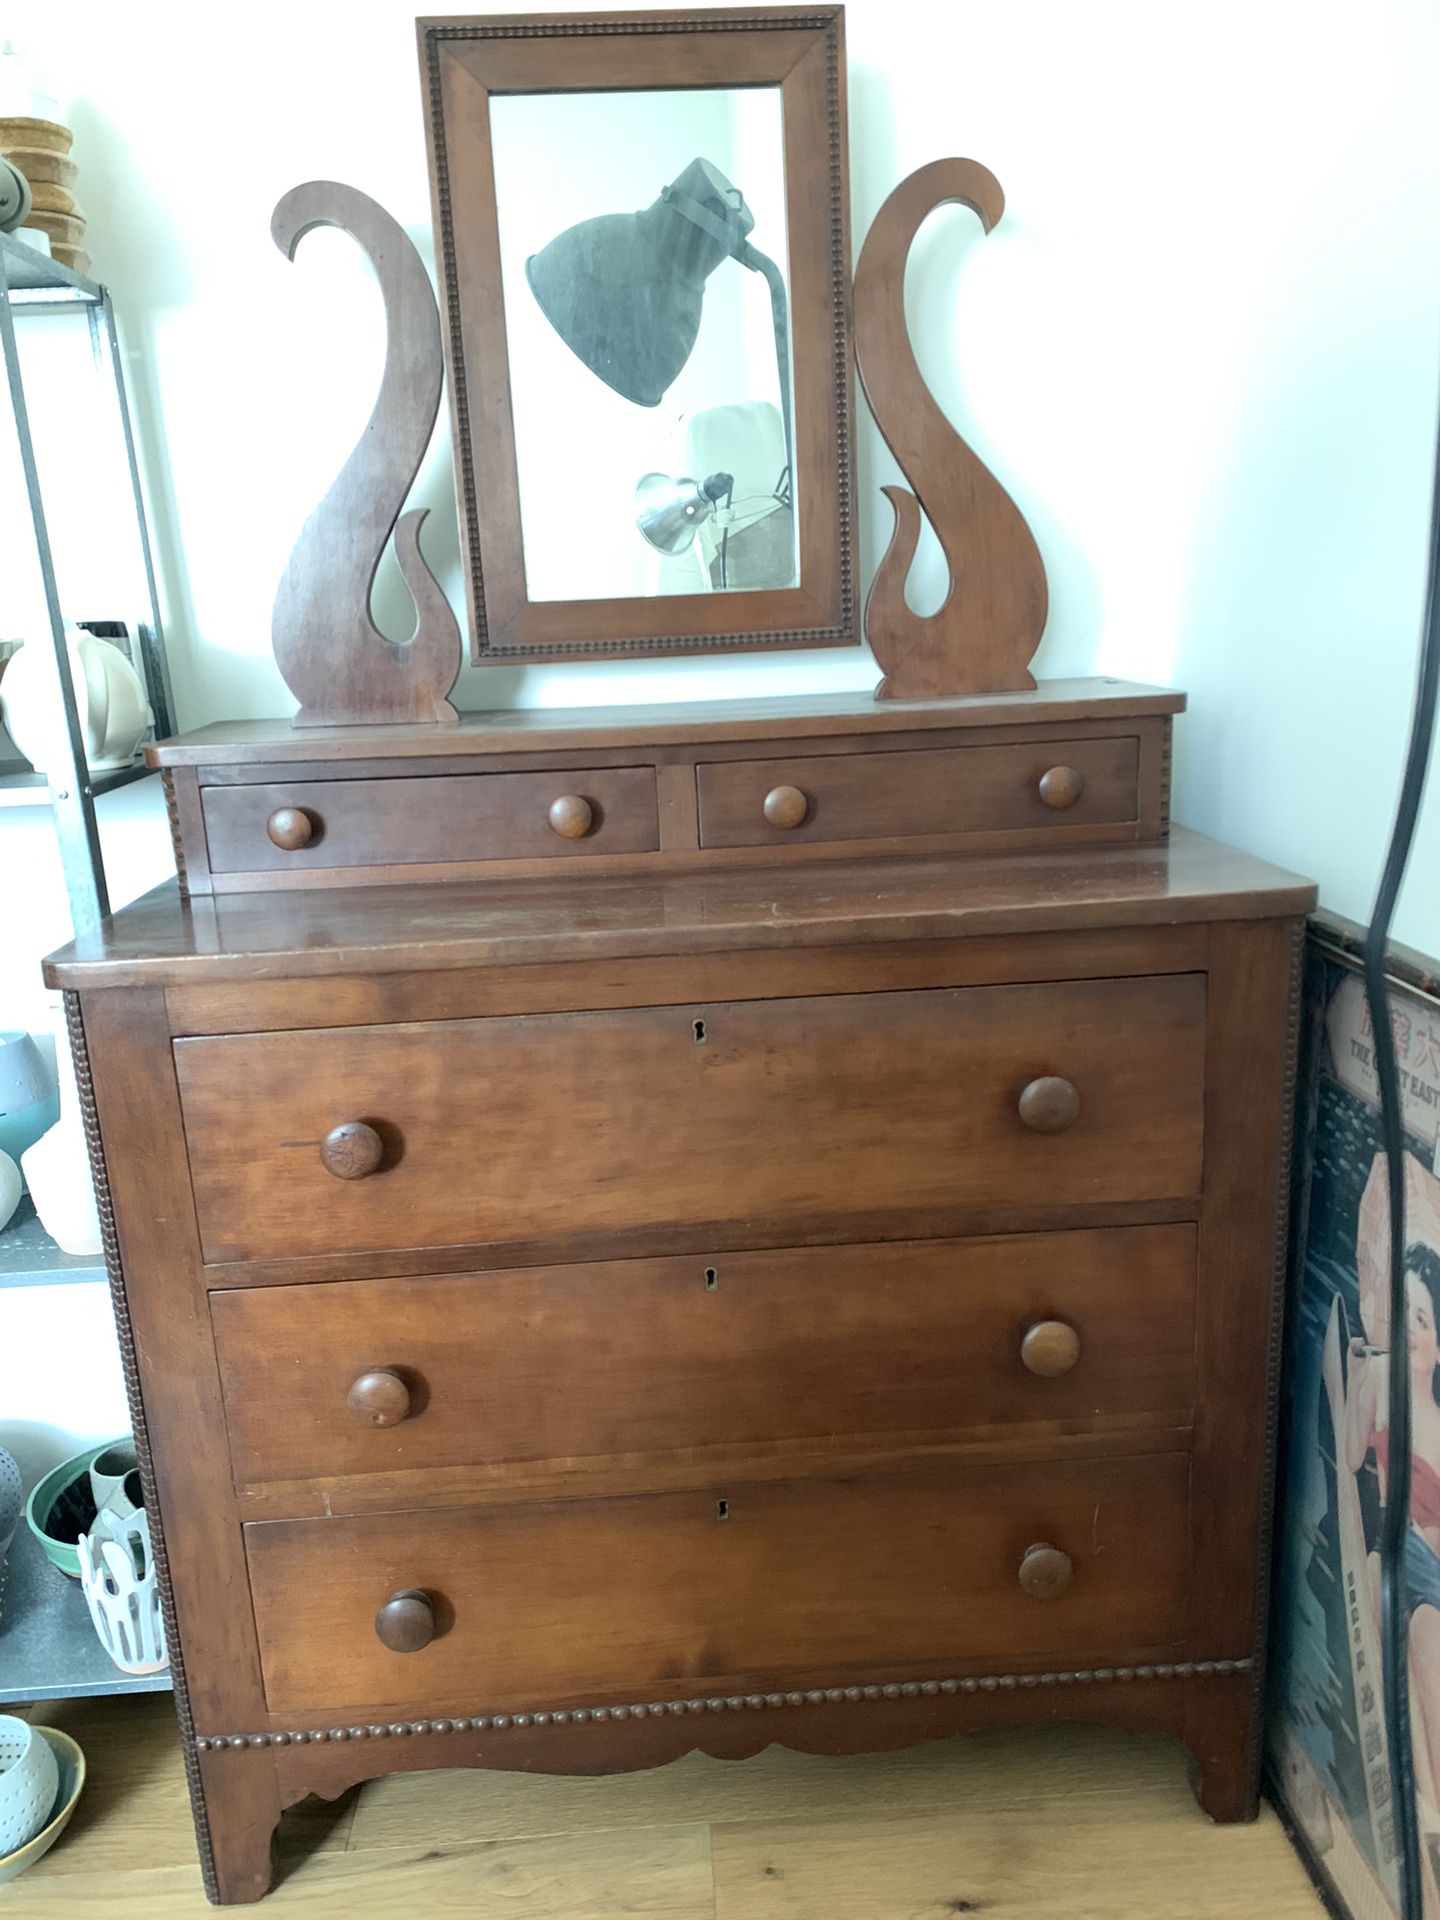 Vintage Antique Wood Dresser with Mirror